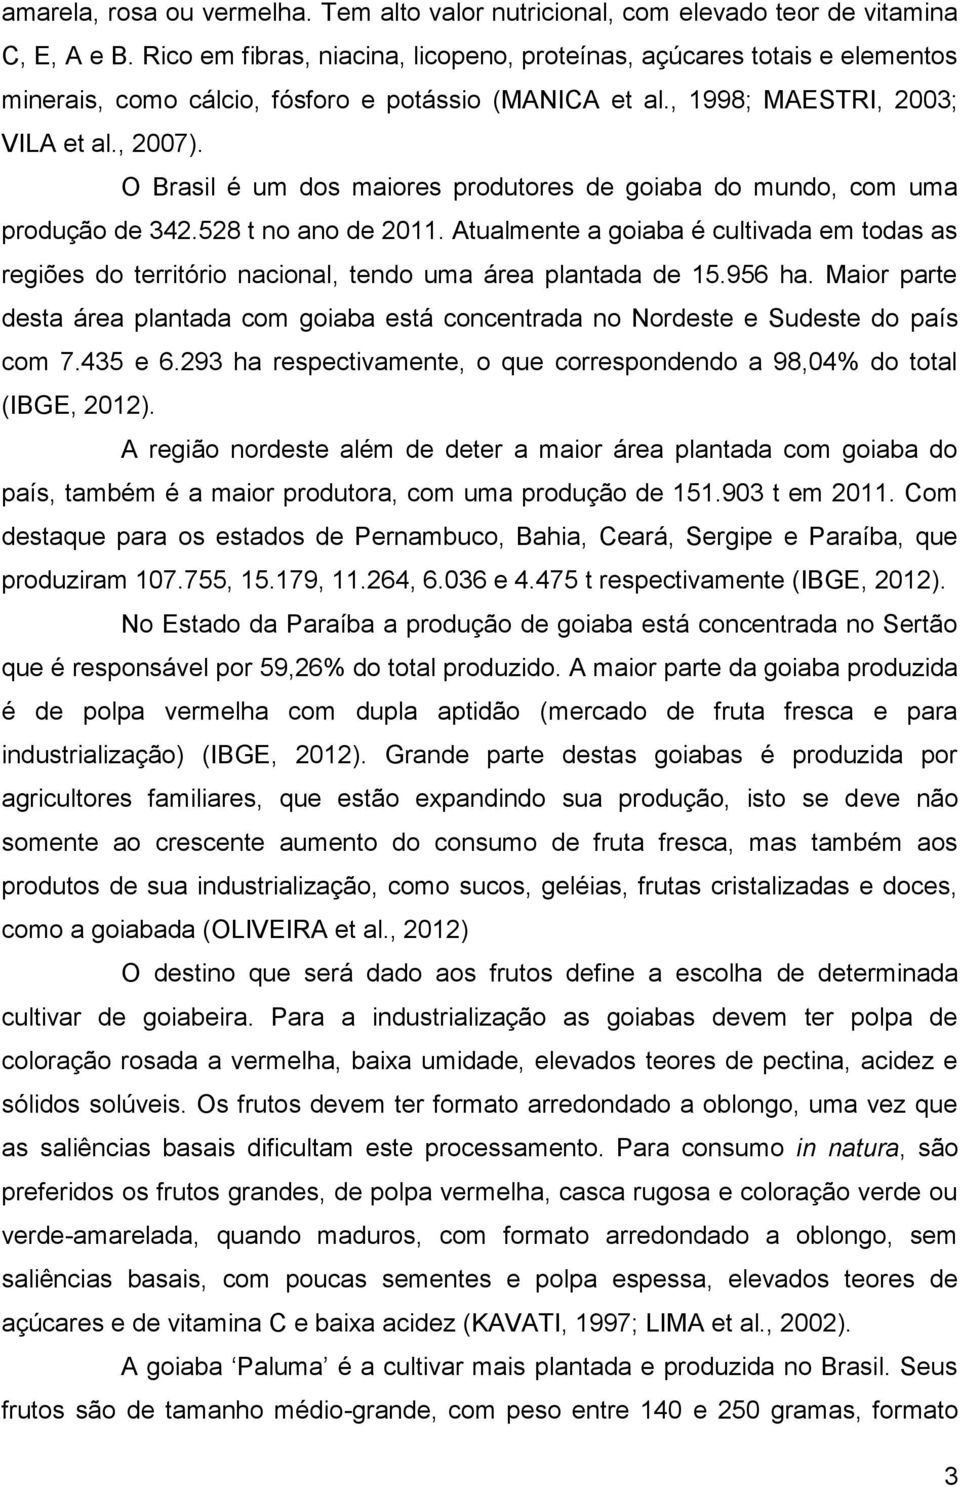 O Brasil é um dos maiores produtores de goiaba do mundo, com uma produção de 342.528 t no ano de 2011.